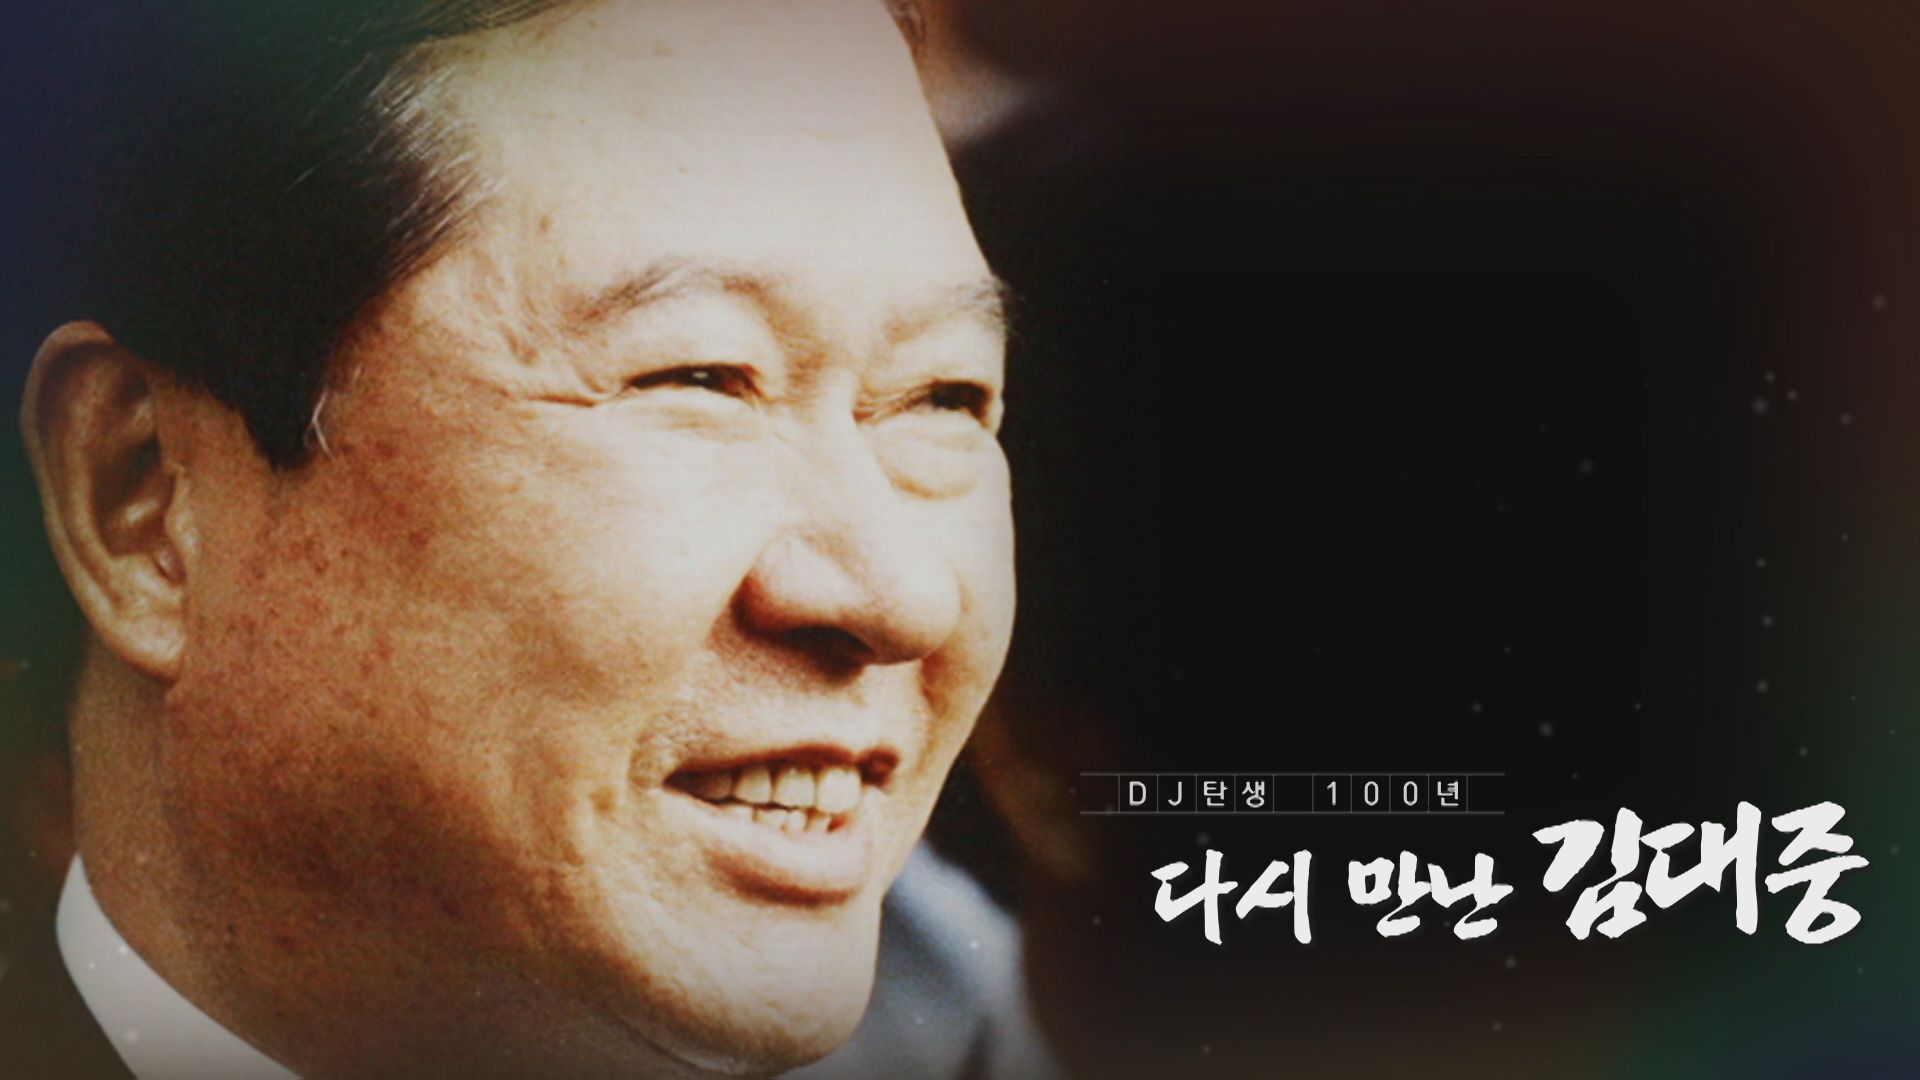 [다시 만난 김대중] “통합과 화해의 정치” - 임채정 전 국회의장